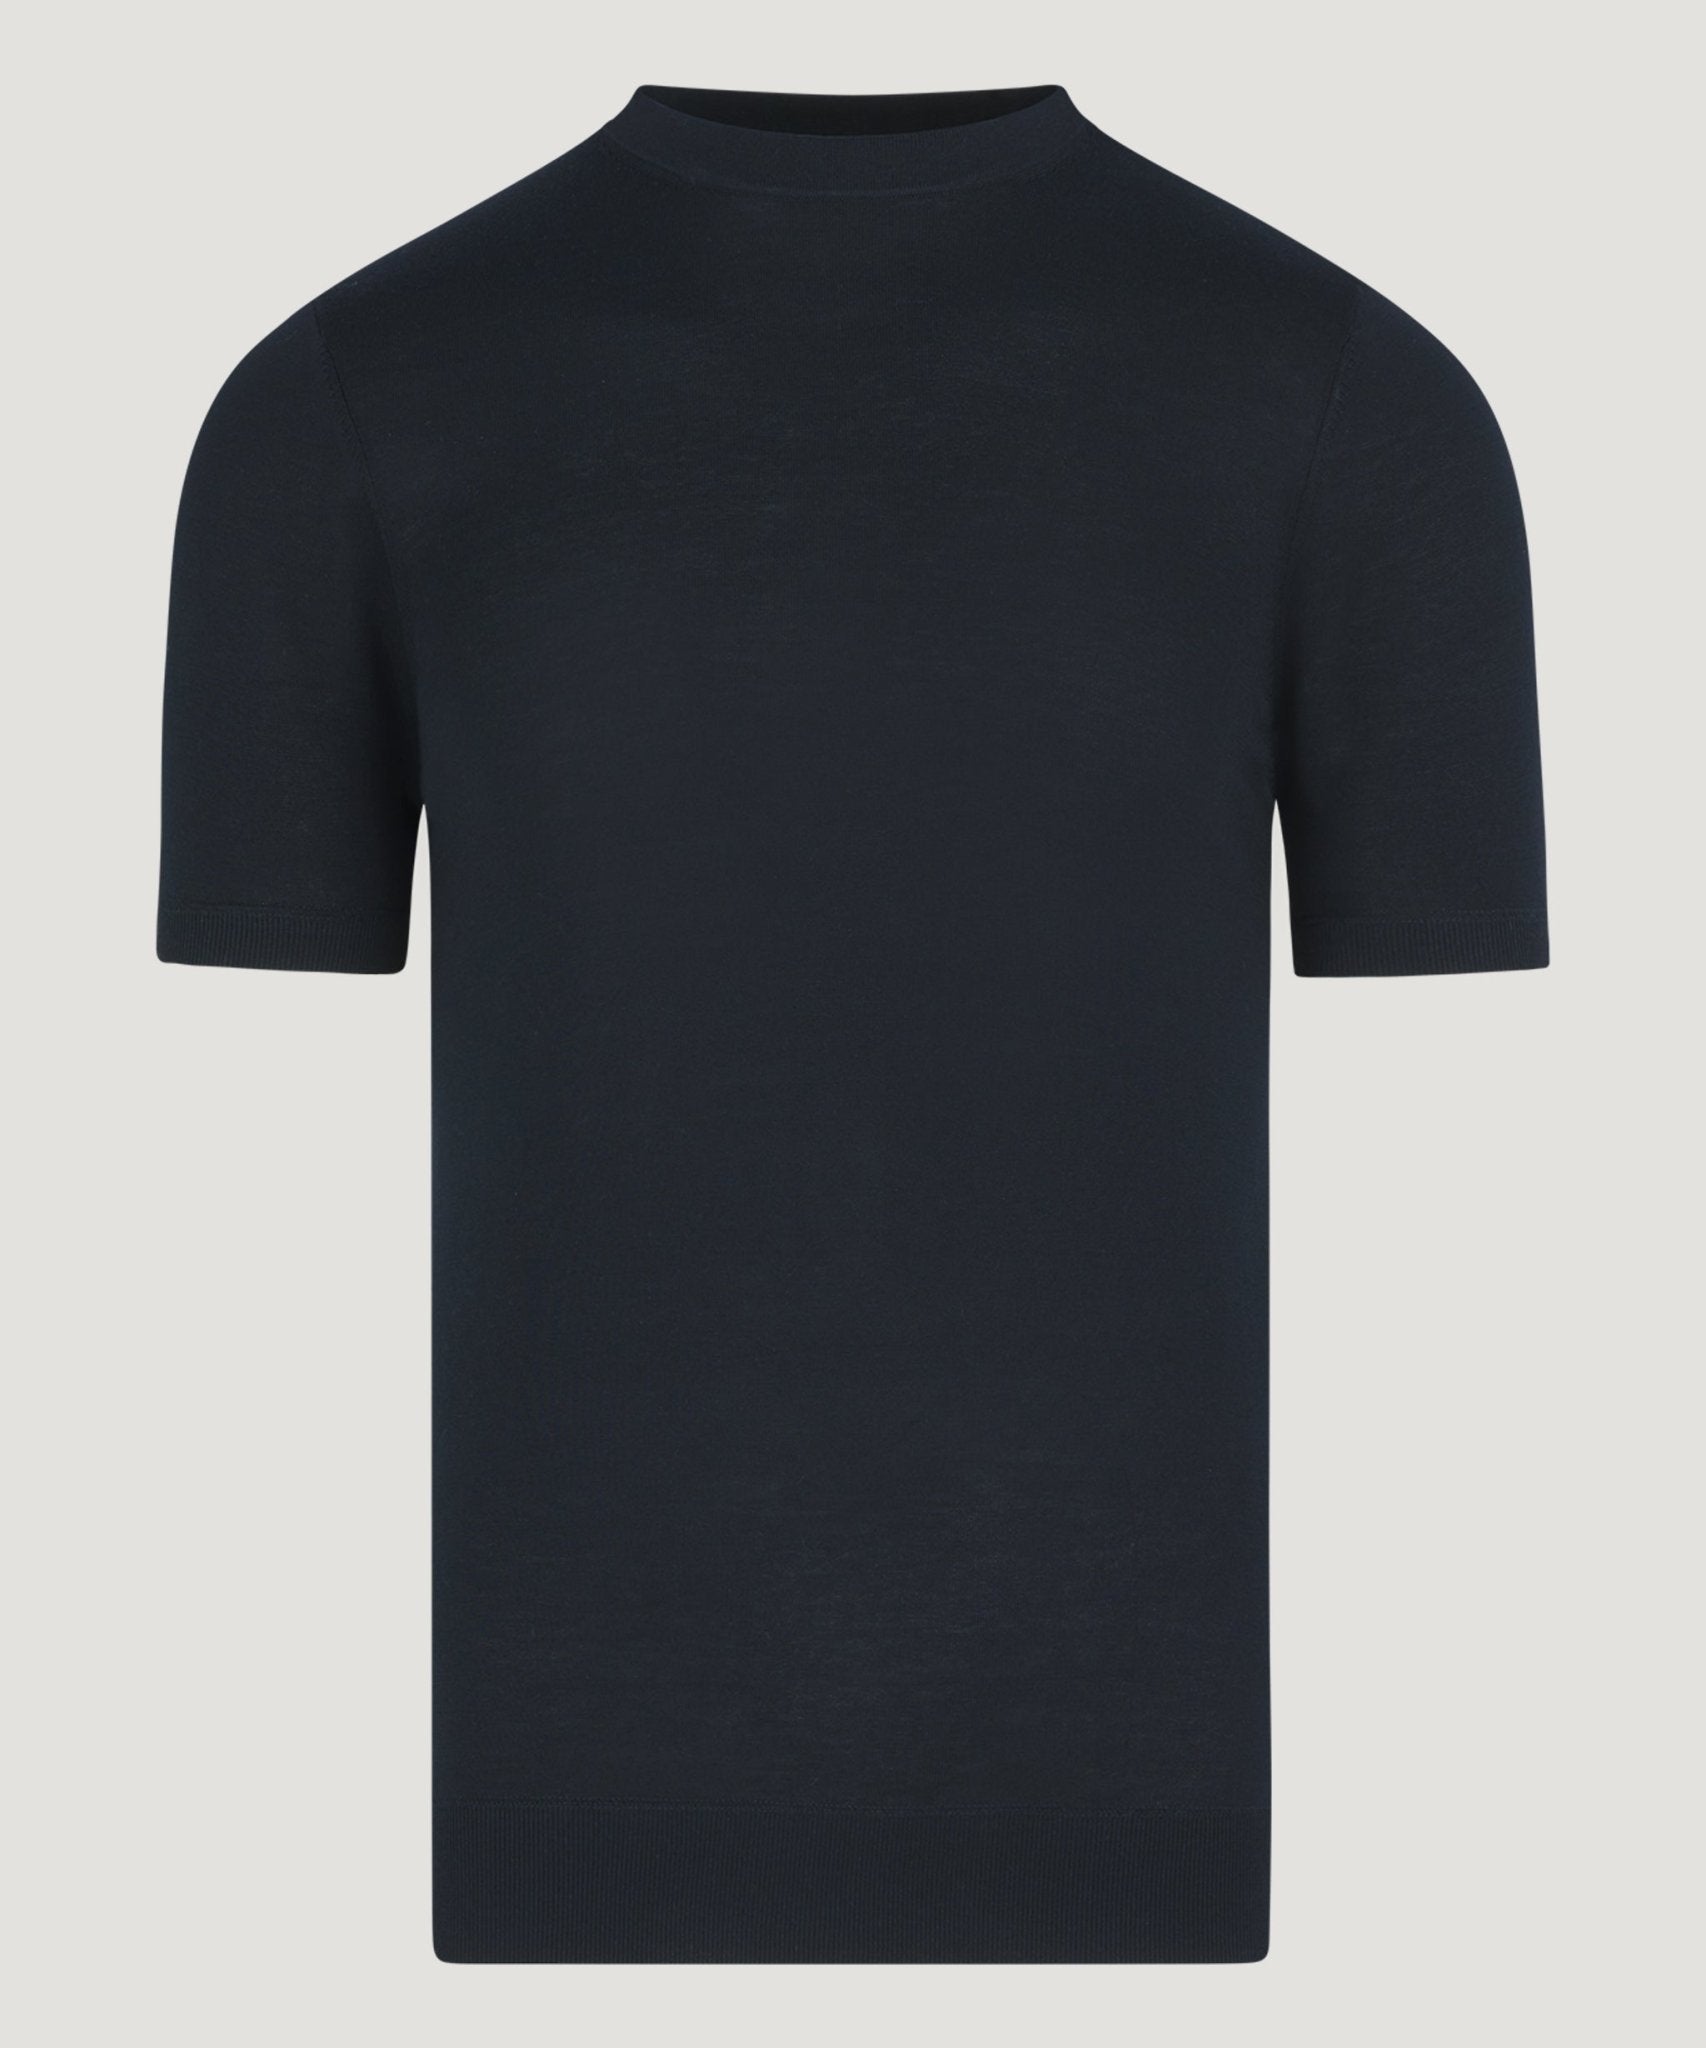 Profuomo T-shirt katoen/zijde navy - The Society Shop